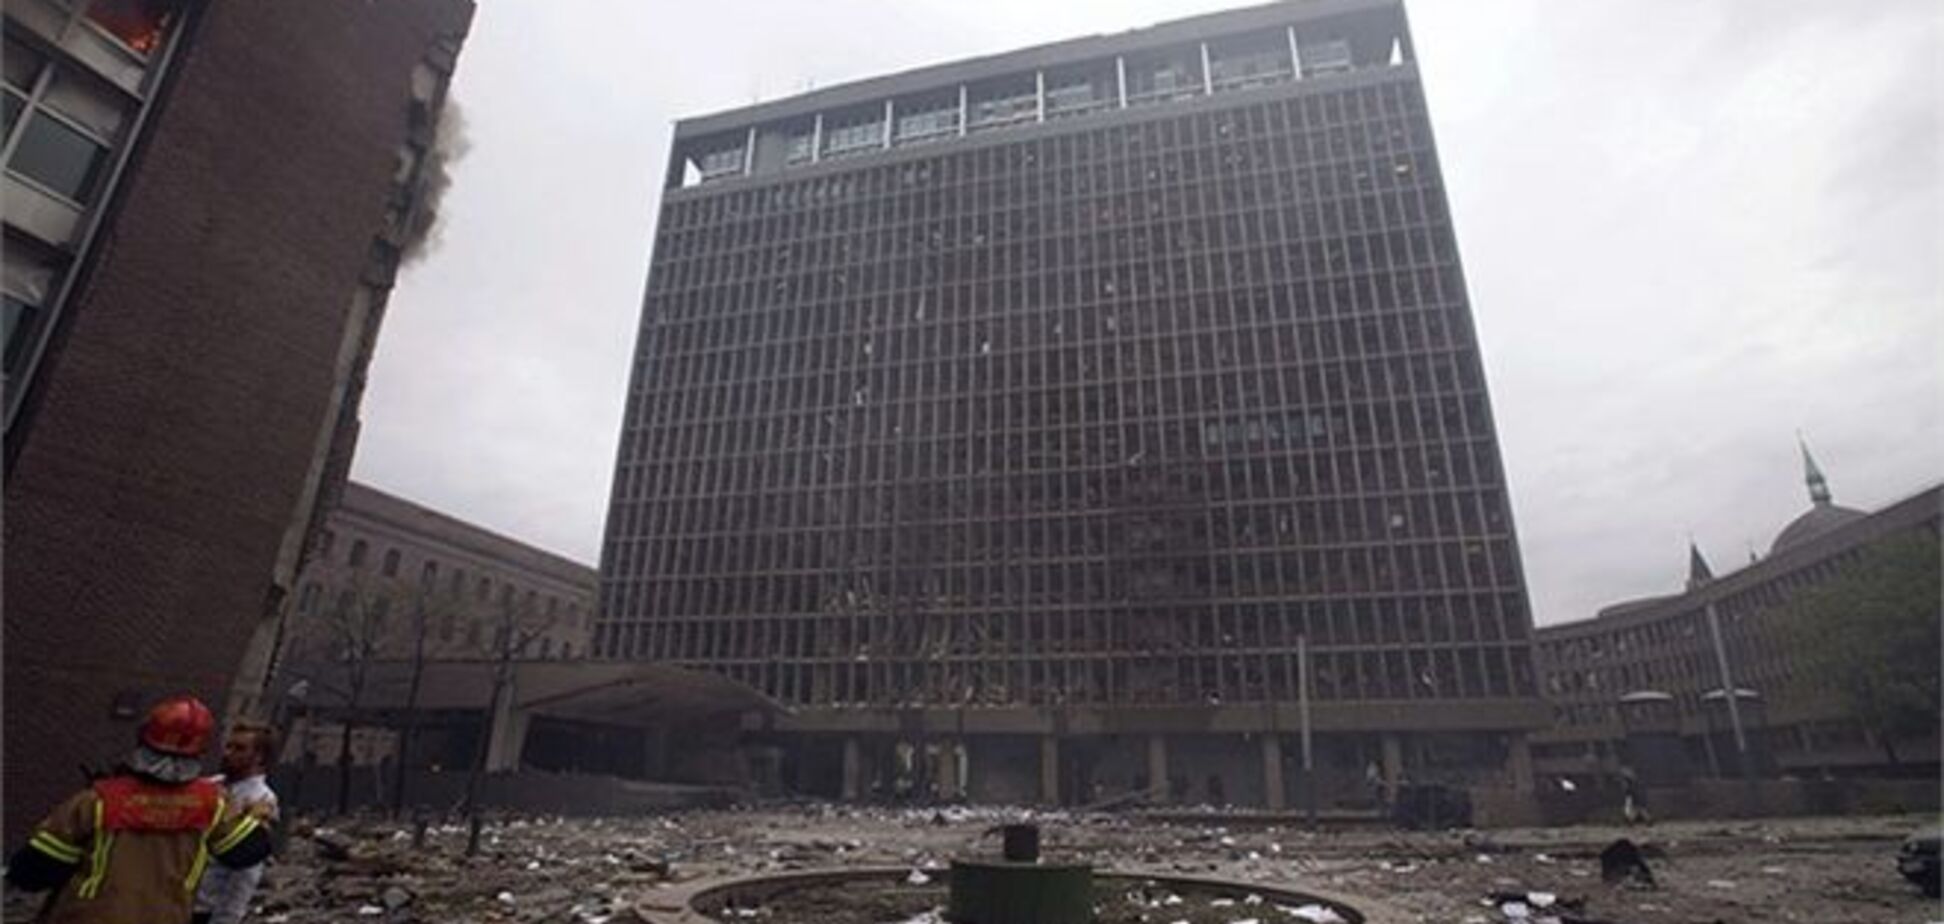 Здание, поврежденное во время теракта Брейвика, хотят сохранить